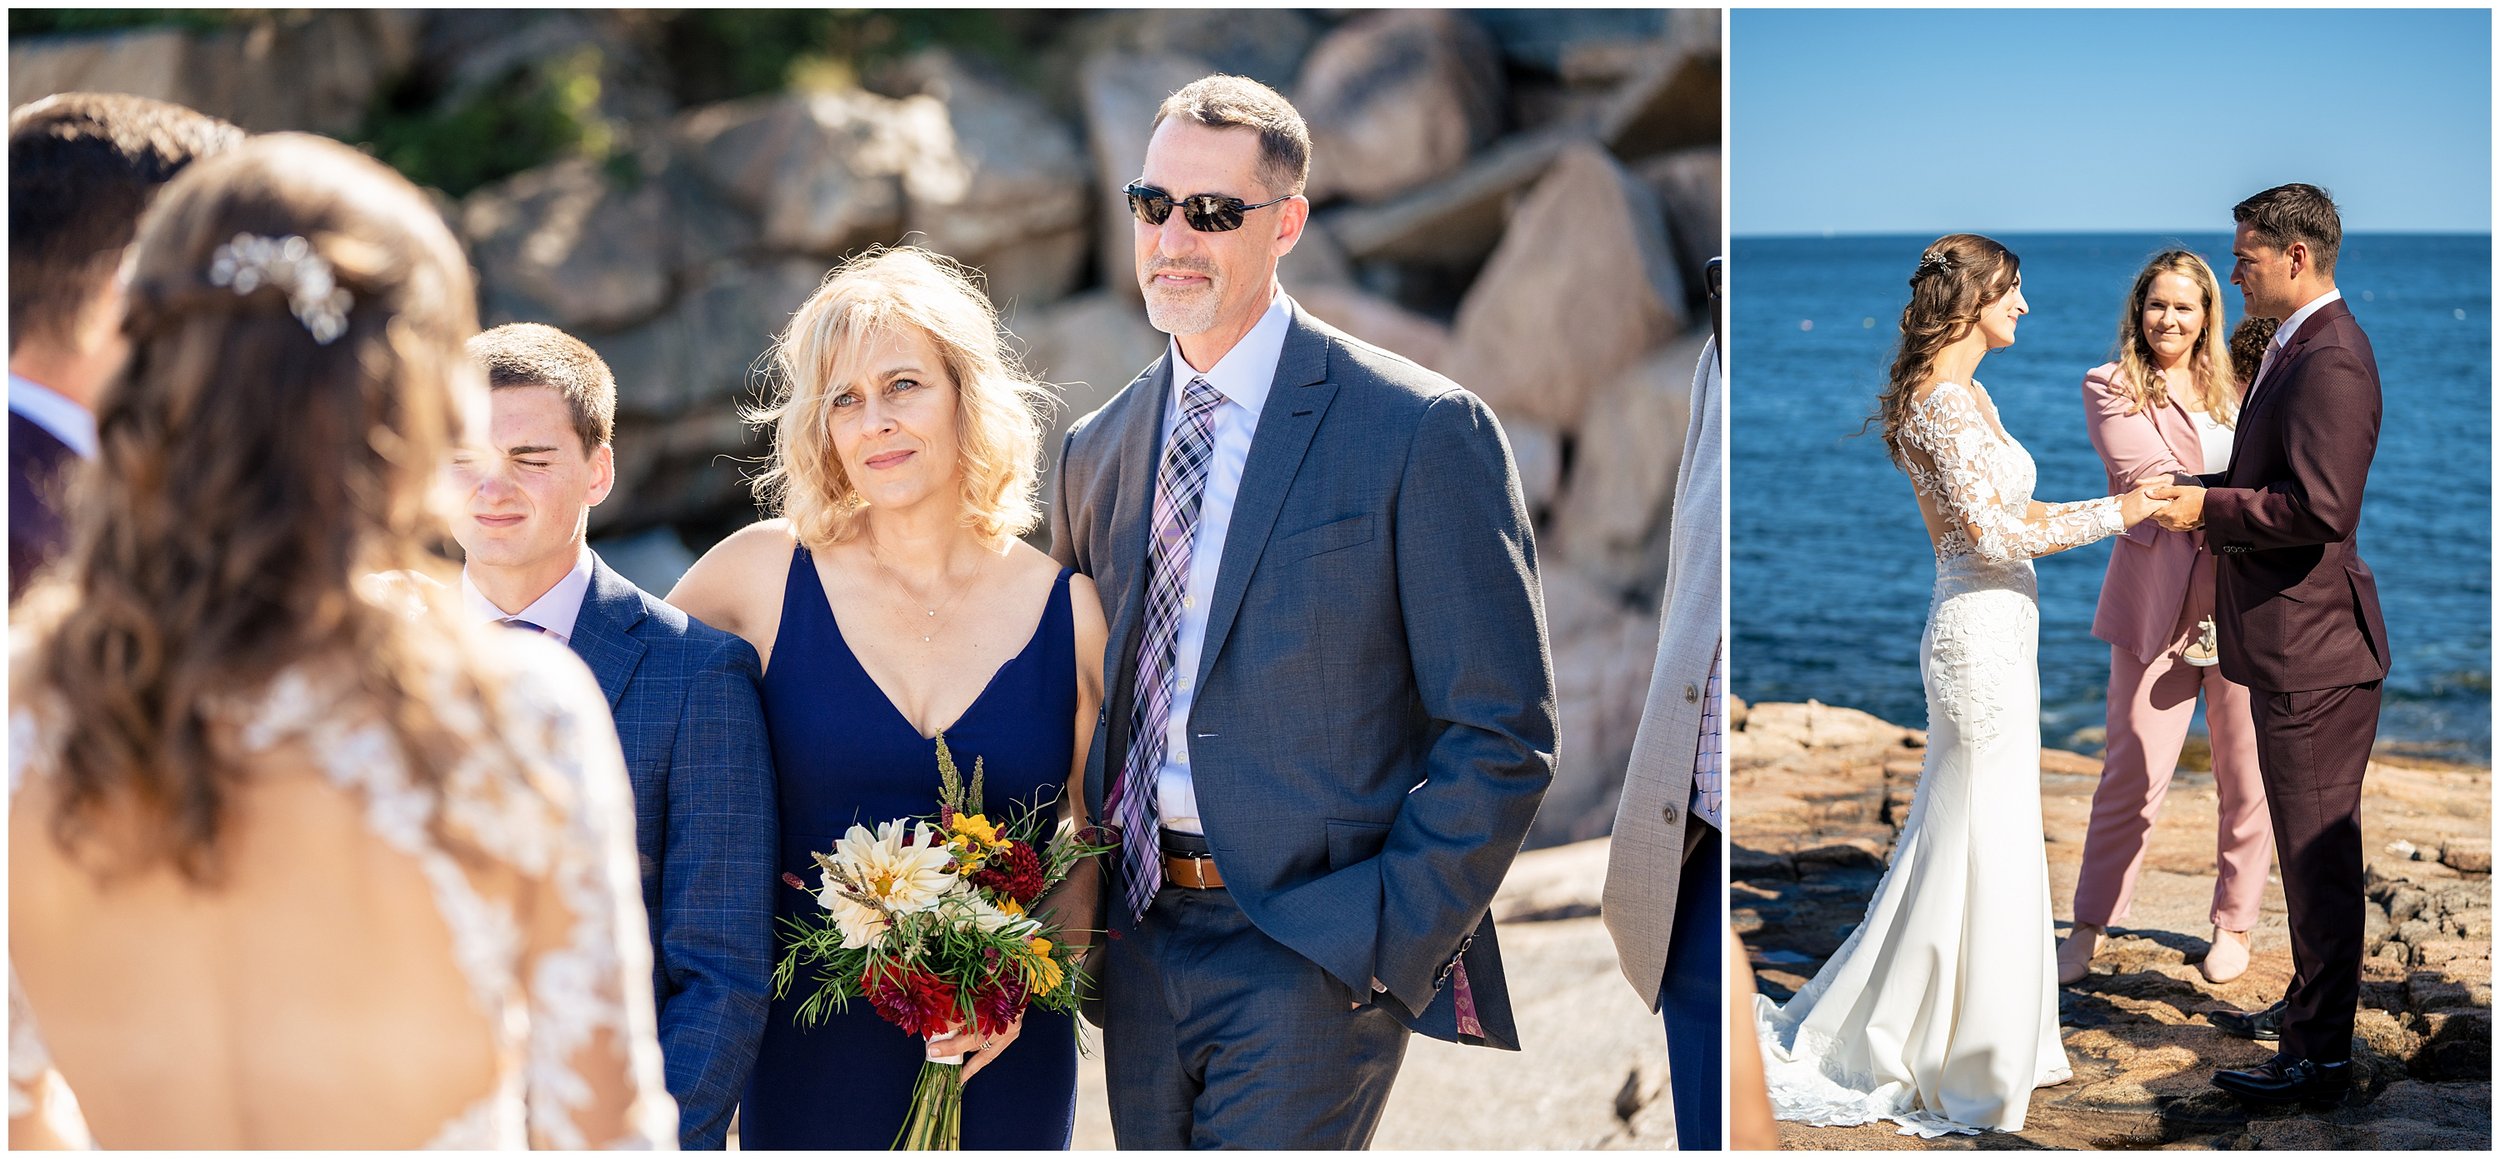 Acadia National Park Wedding Photographers, Bar Harbor Wedding Photographers, Two Adventurous Souls- 082423_0034.jpg